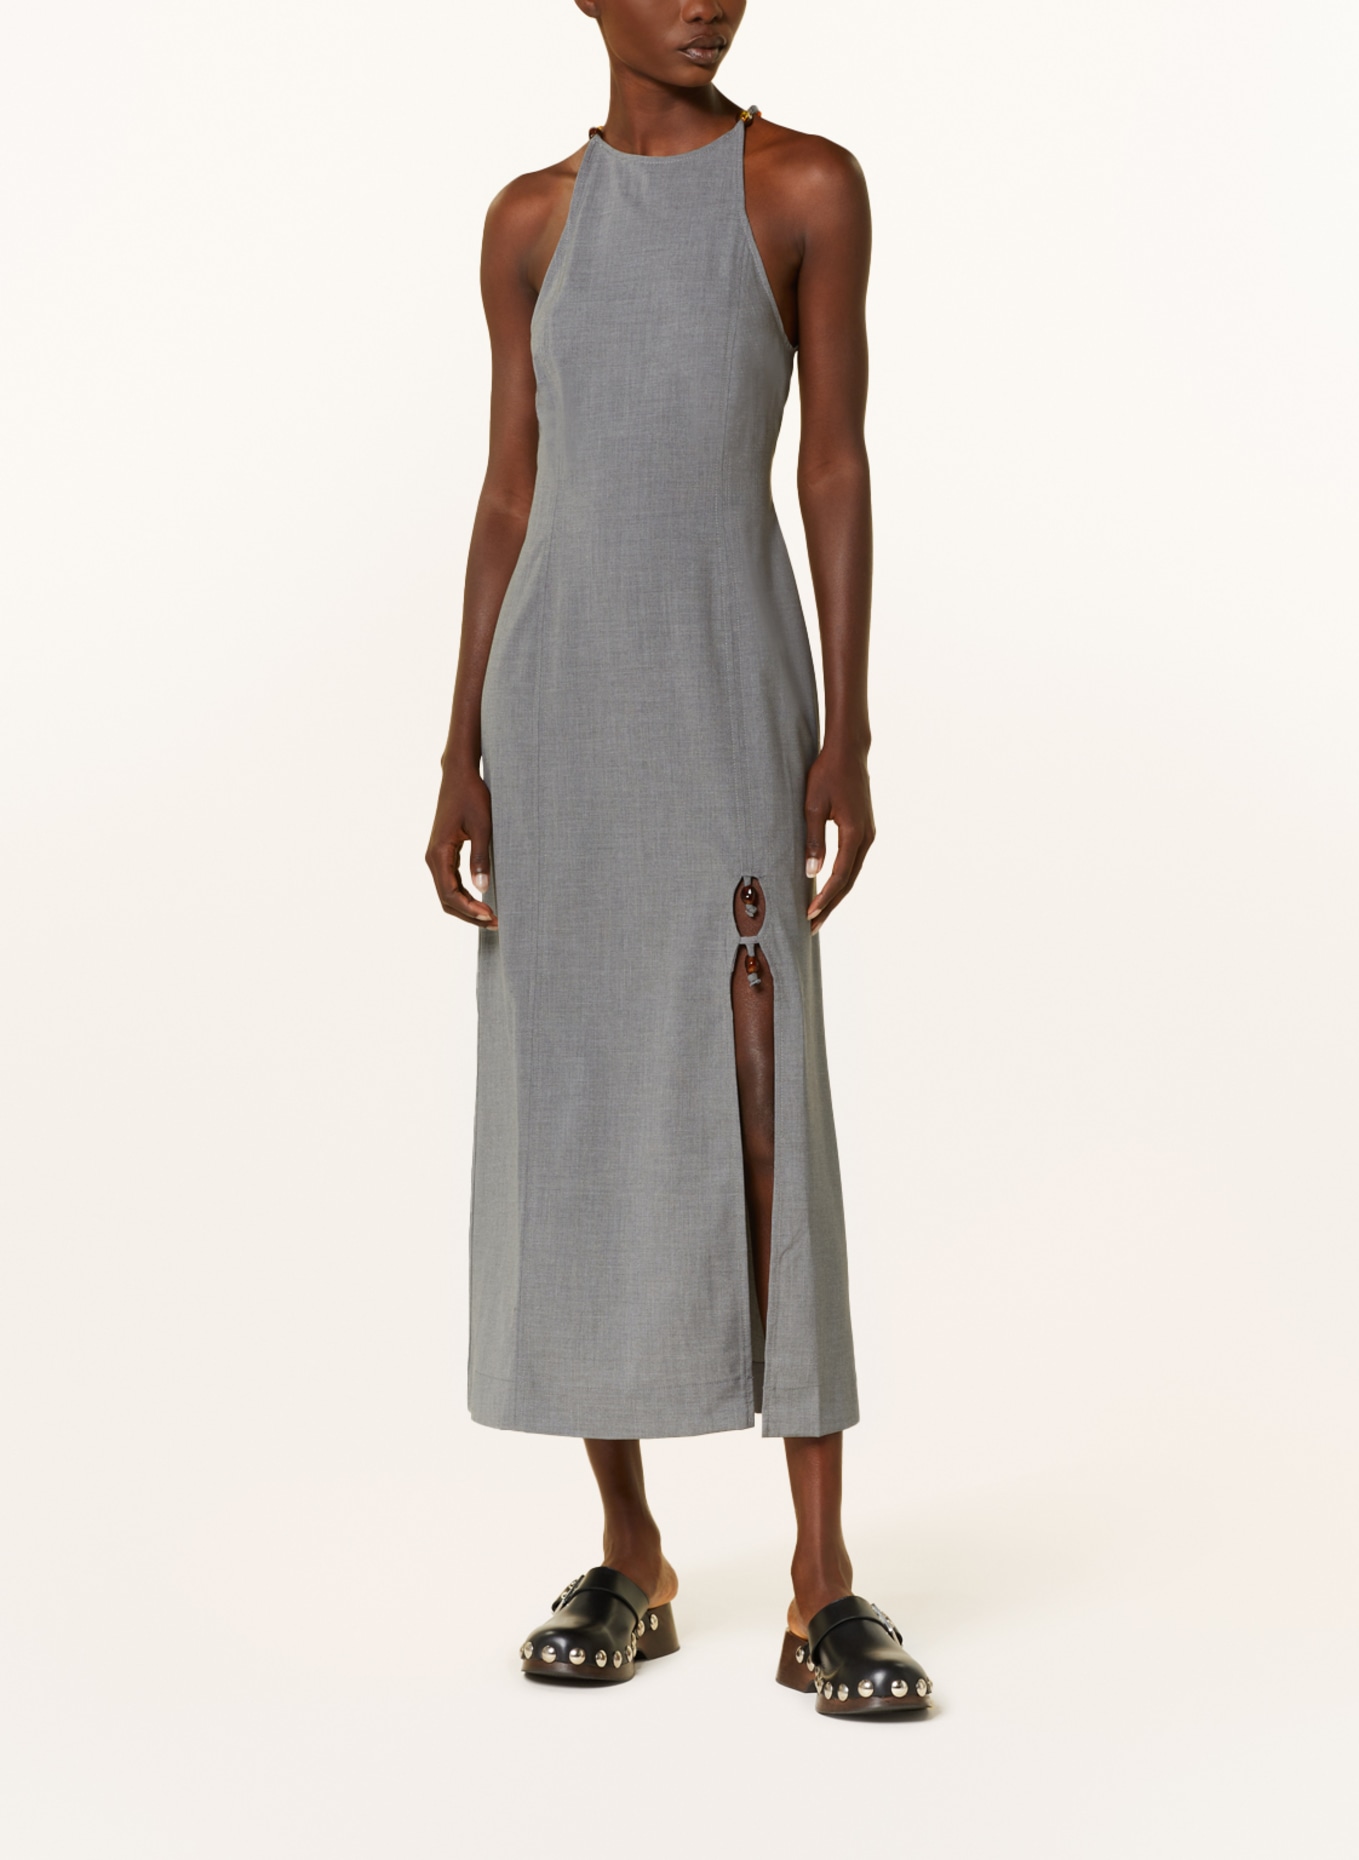 GANNI Kleid DRAPEY mit Schmucksteinen, Farbe: GRAU (Bild 2)